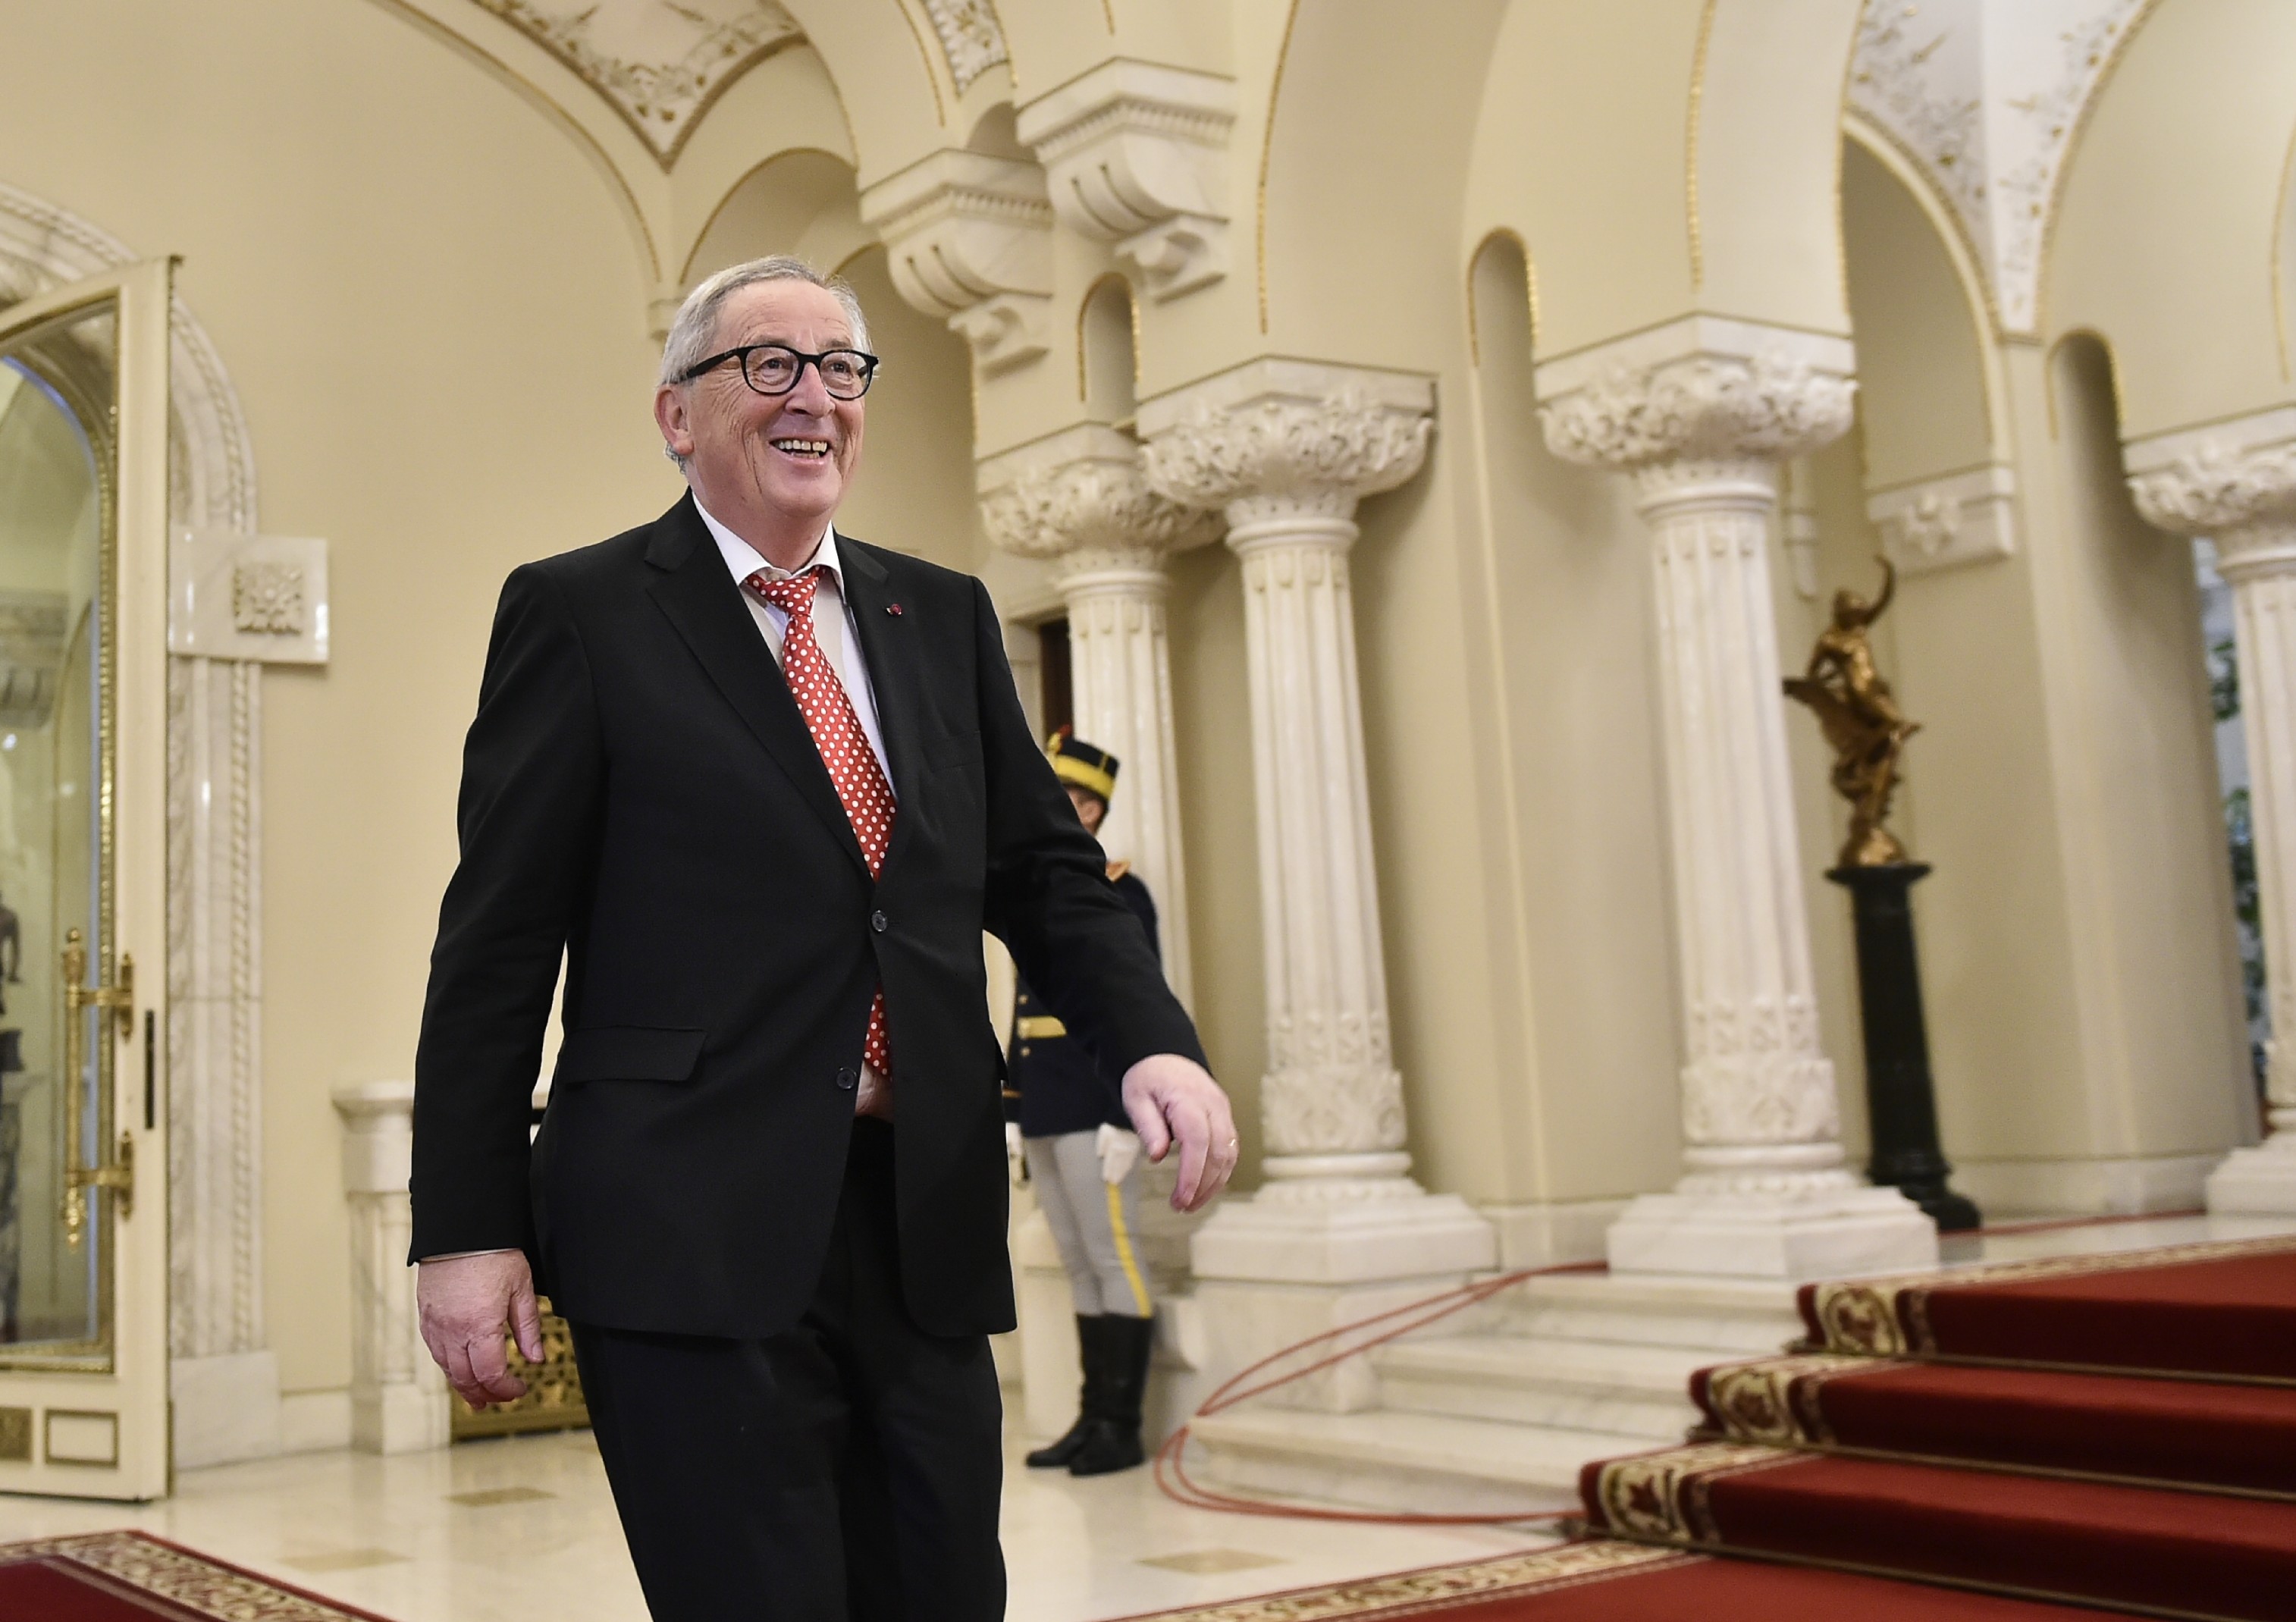 Mesajul lui Juncker, după primirea în România: „Suntem trataţi ca nişte prinţi aici”